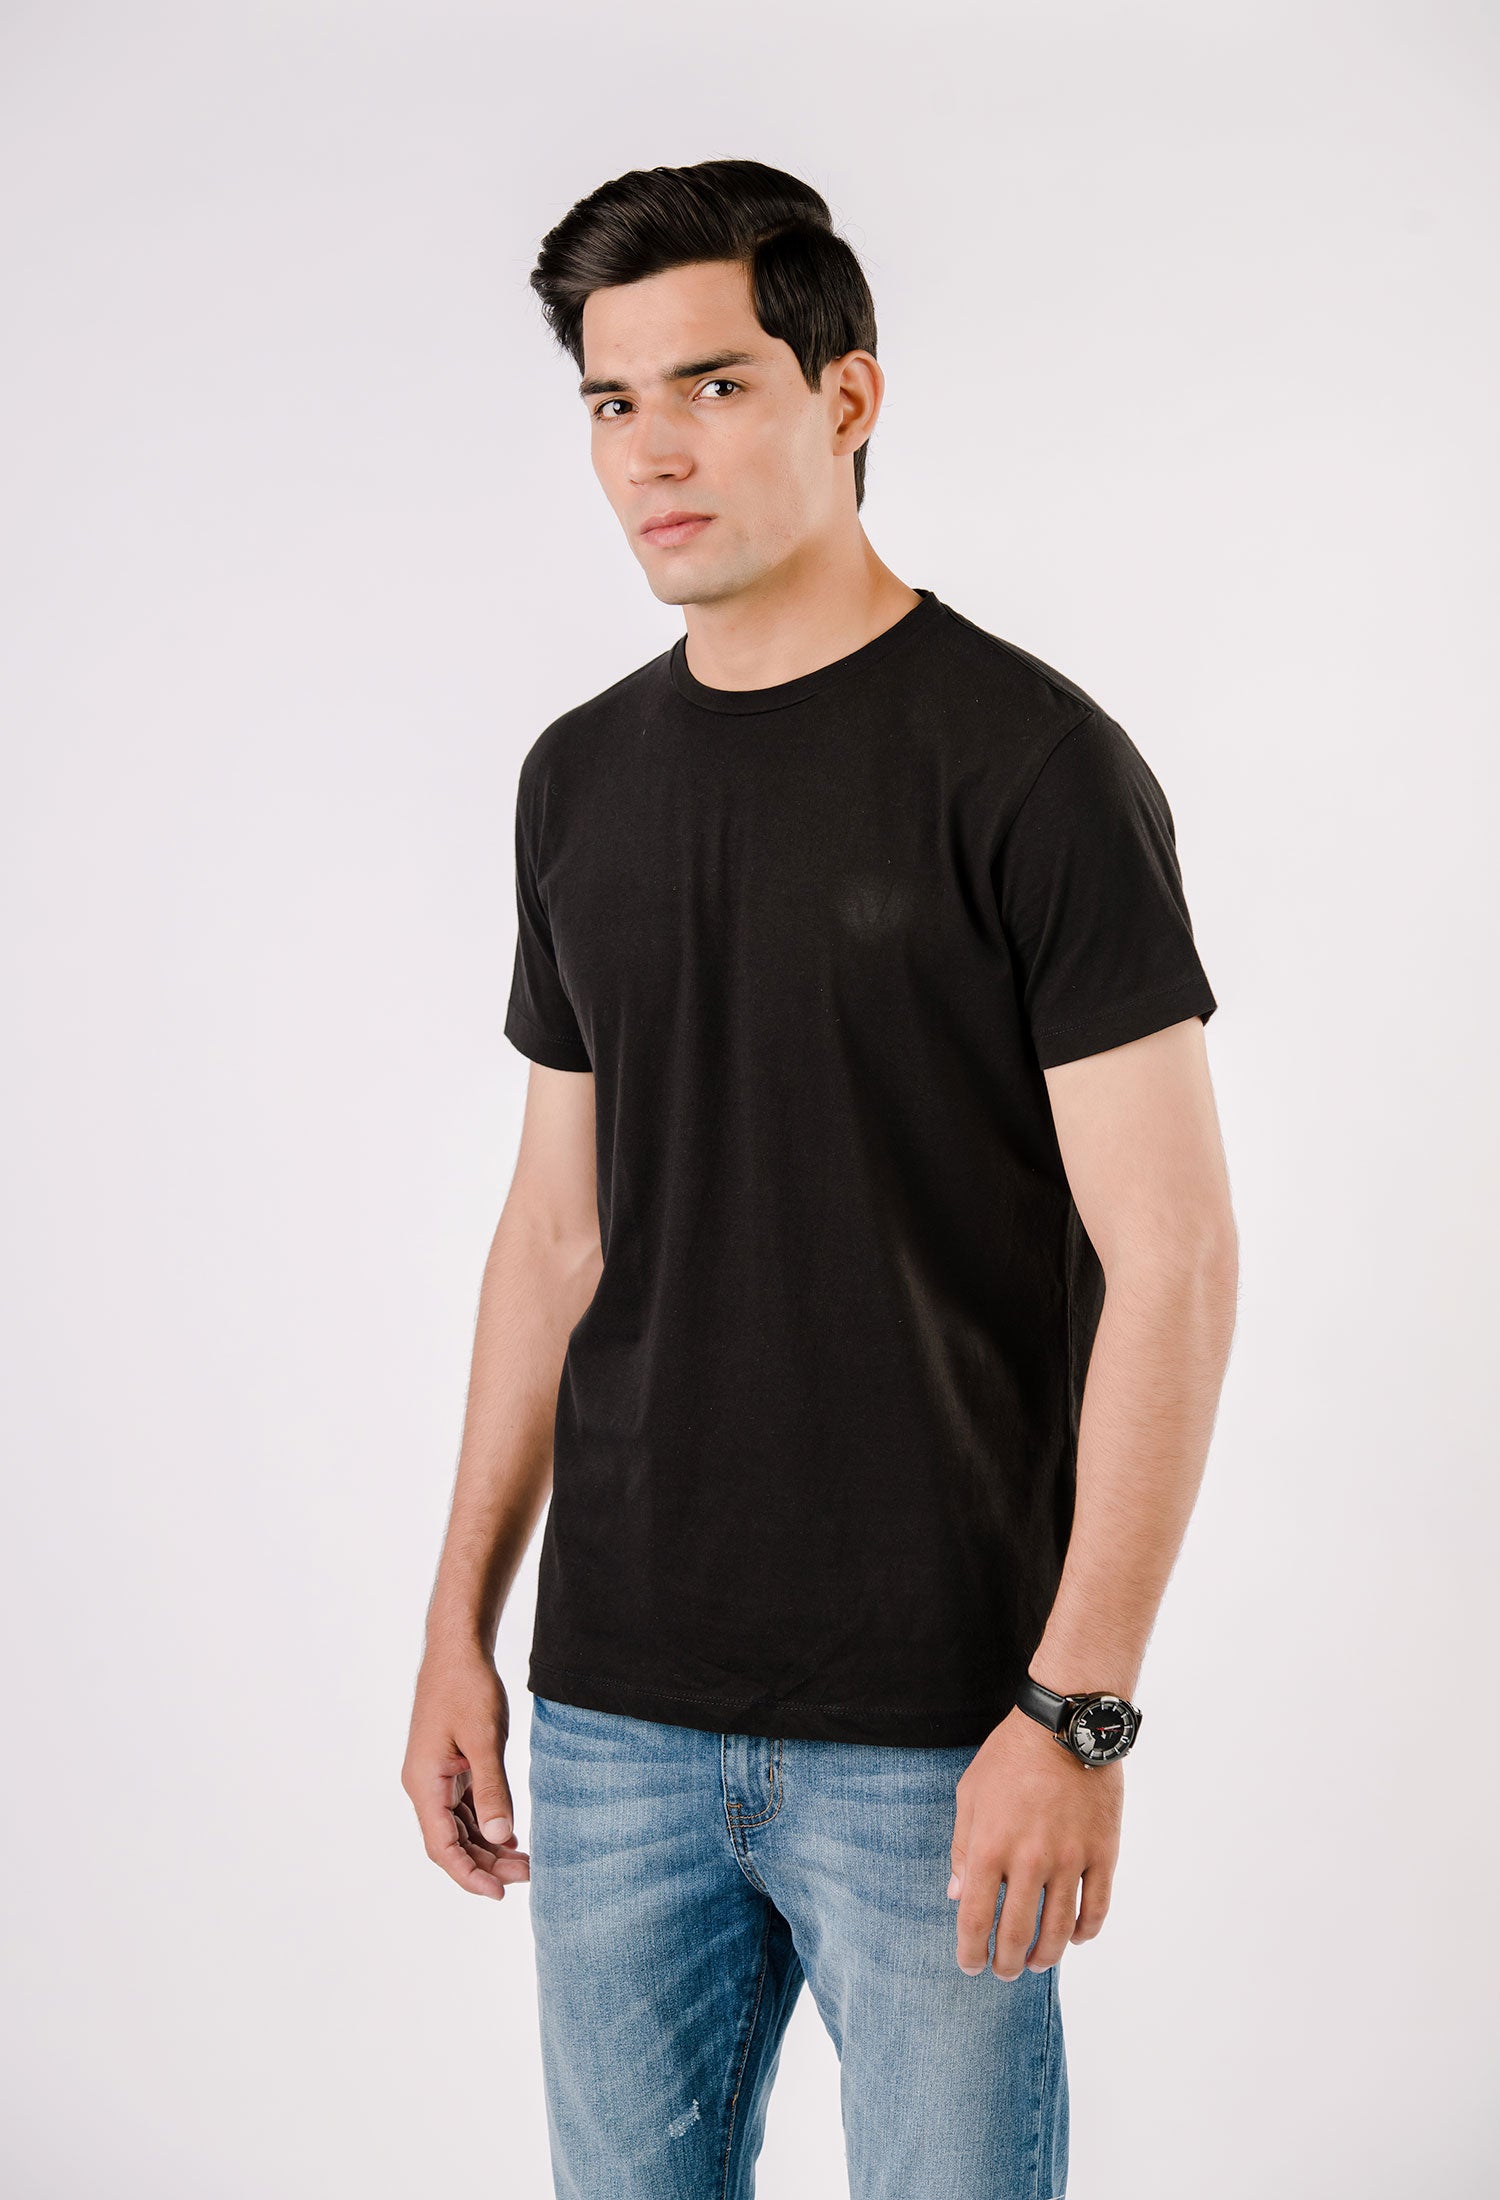 Black Basic T-Shirt (T-SHB-0001)